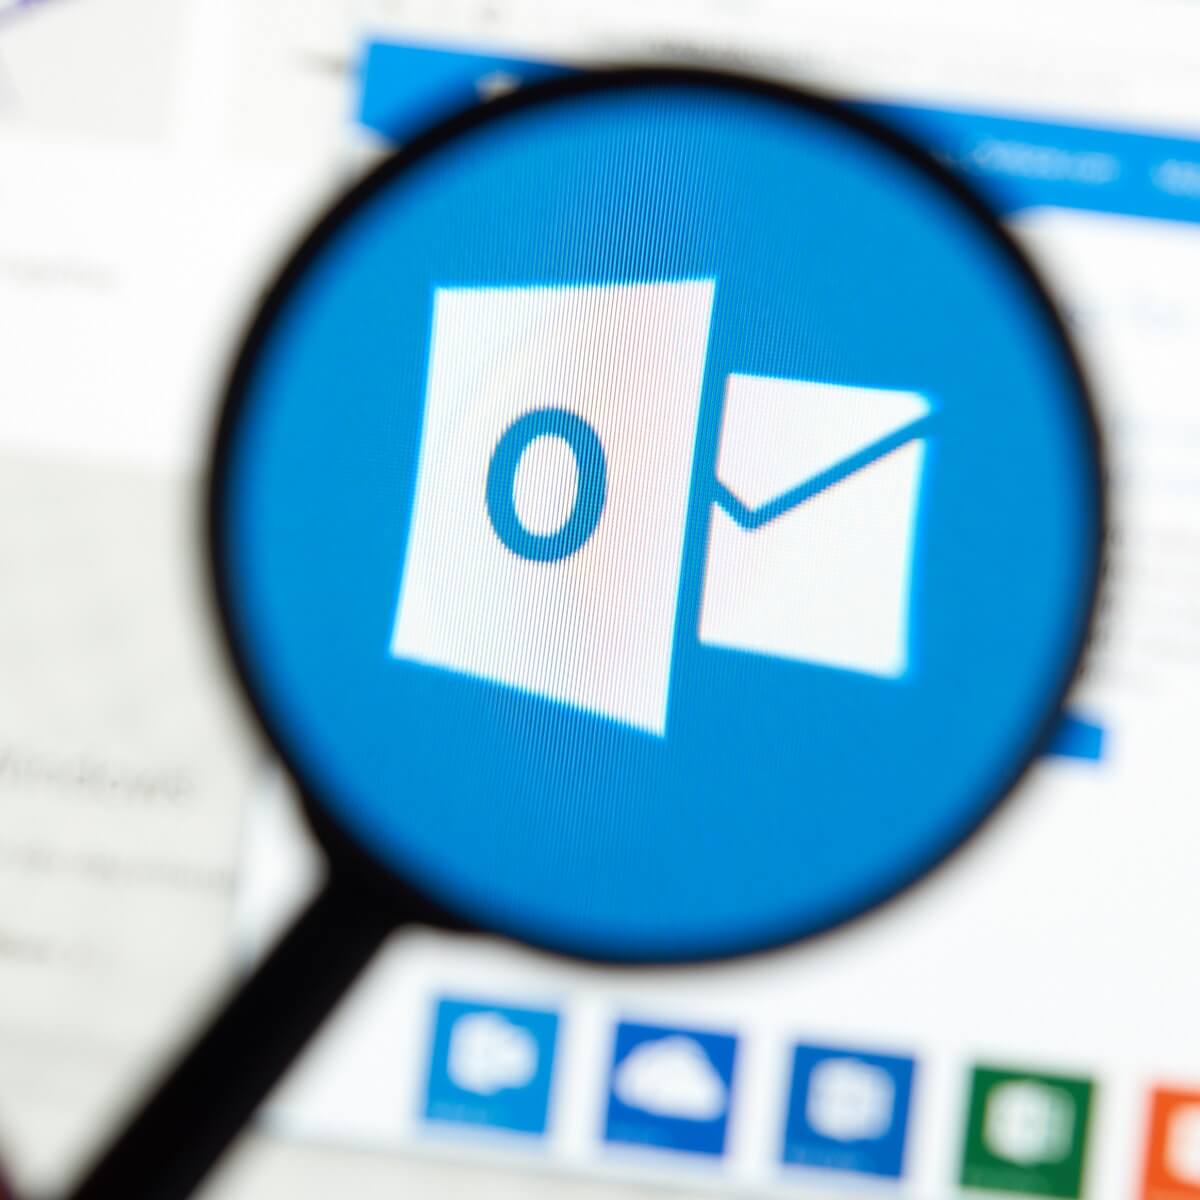 Respuesta: Los ajustes de seguridad de Outlook no suelen estar configurados